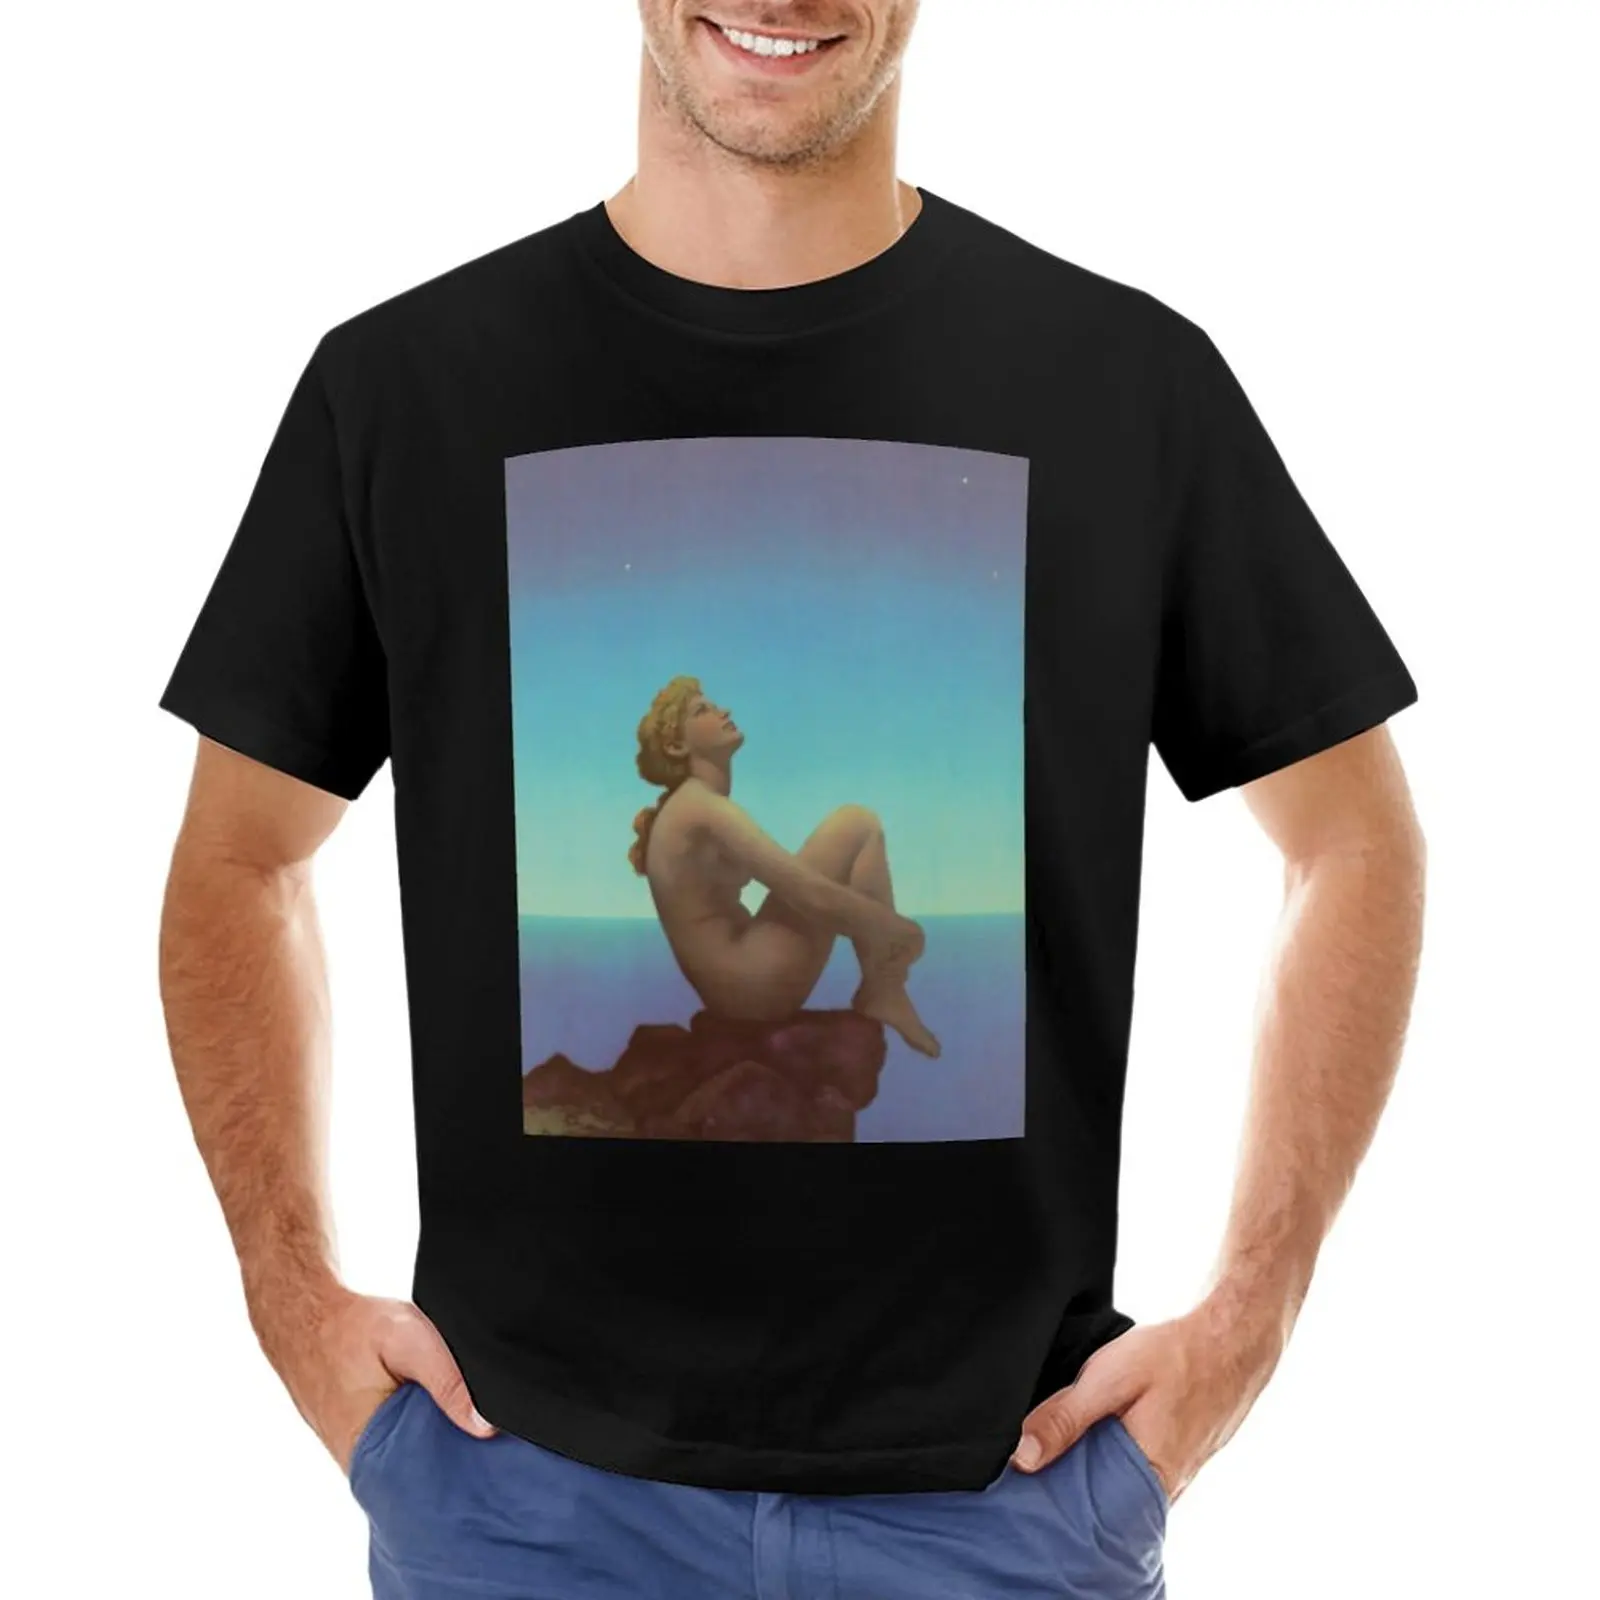 Звезды- Максфилд Пэрриш, футболка с иллюстрациями середины века, короткая футболка с аниме, мужские футболки с длинным рукавом 0